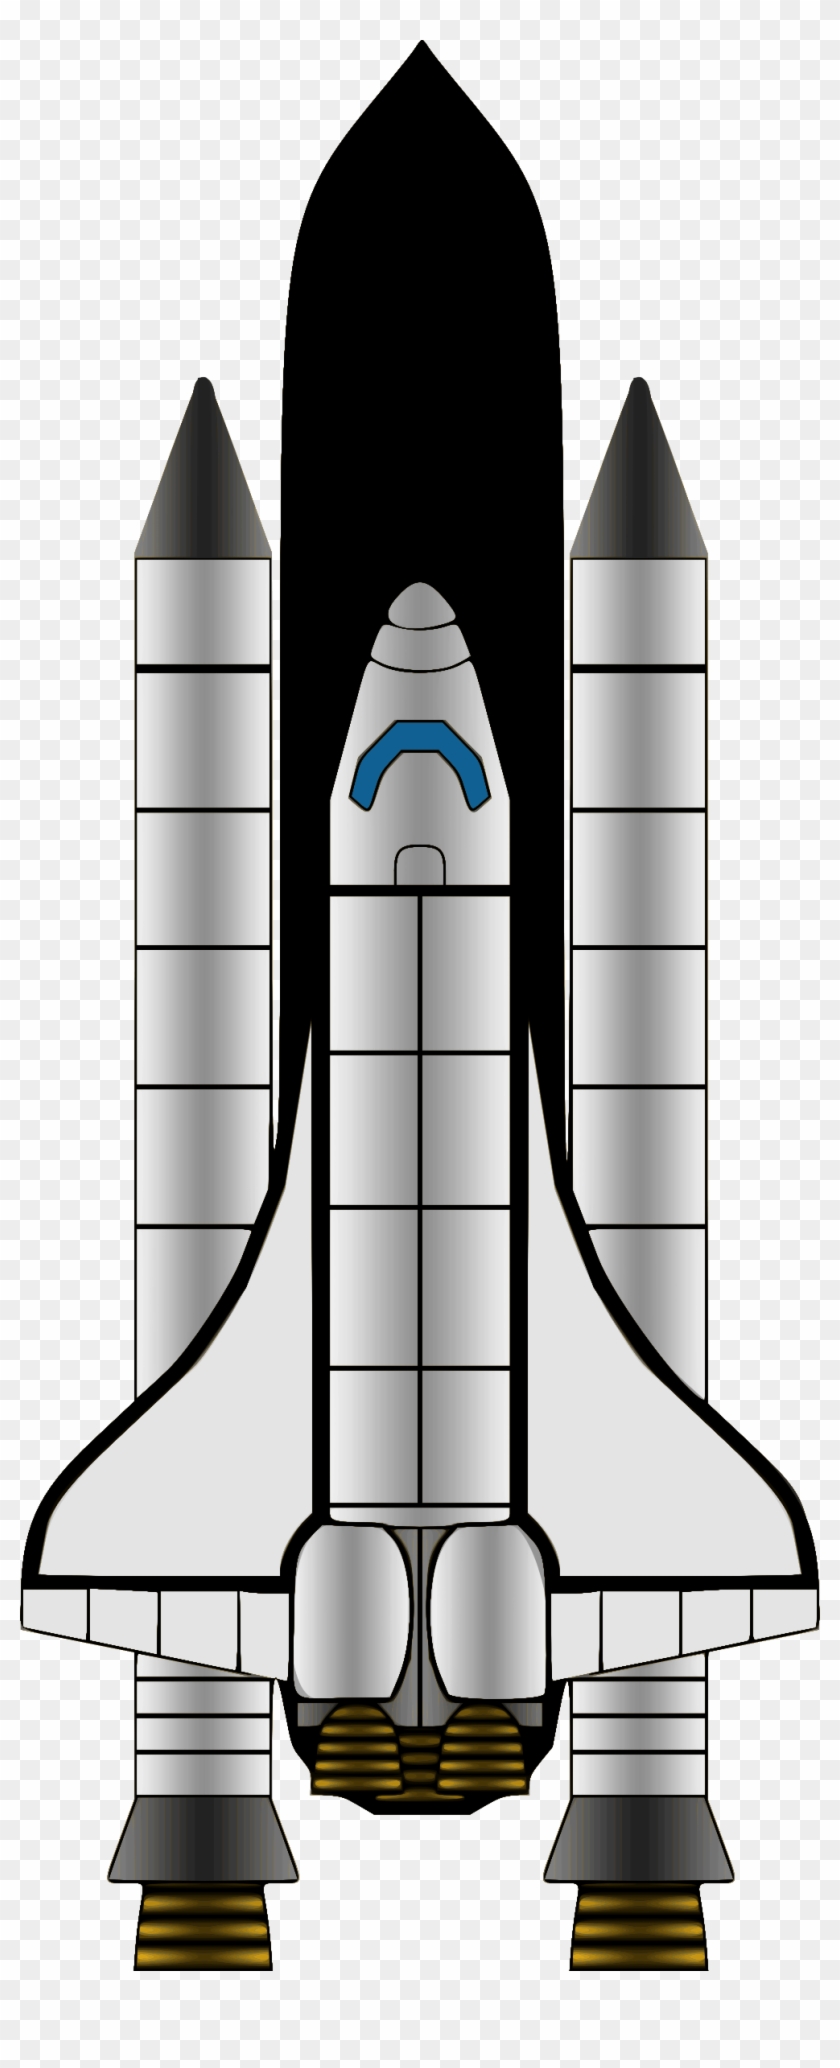 Big Image - Label A Rocket Ks1 Clipart